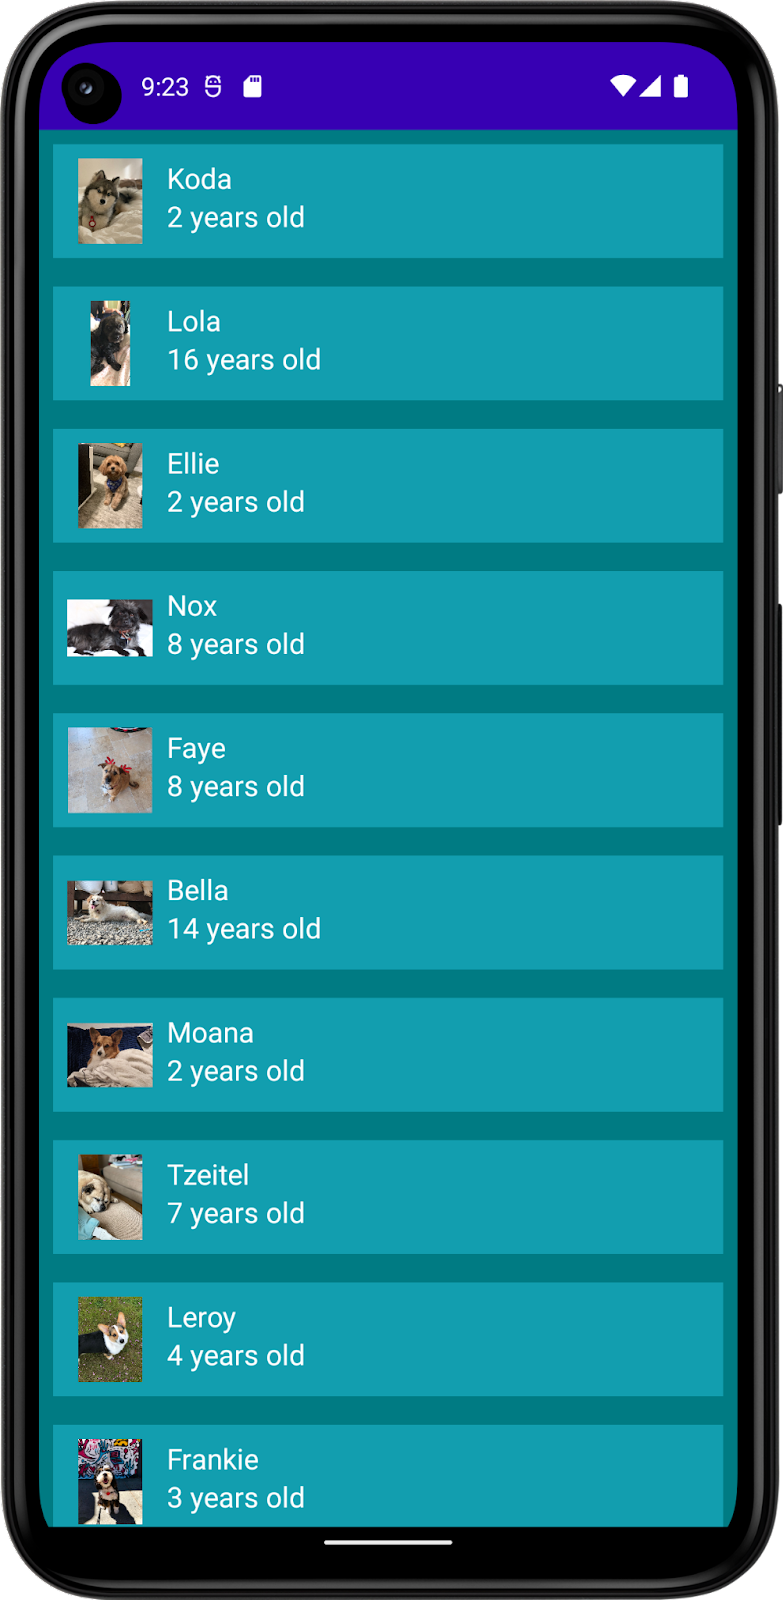 この画像は、犬の名前、写真、年齢を含むリストを表示するアプリを示しています。このアプリには、アプリの背景色とリストアイテムの背景色、テキストの色が含まれています。これはダークモードです。